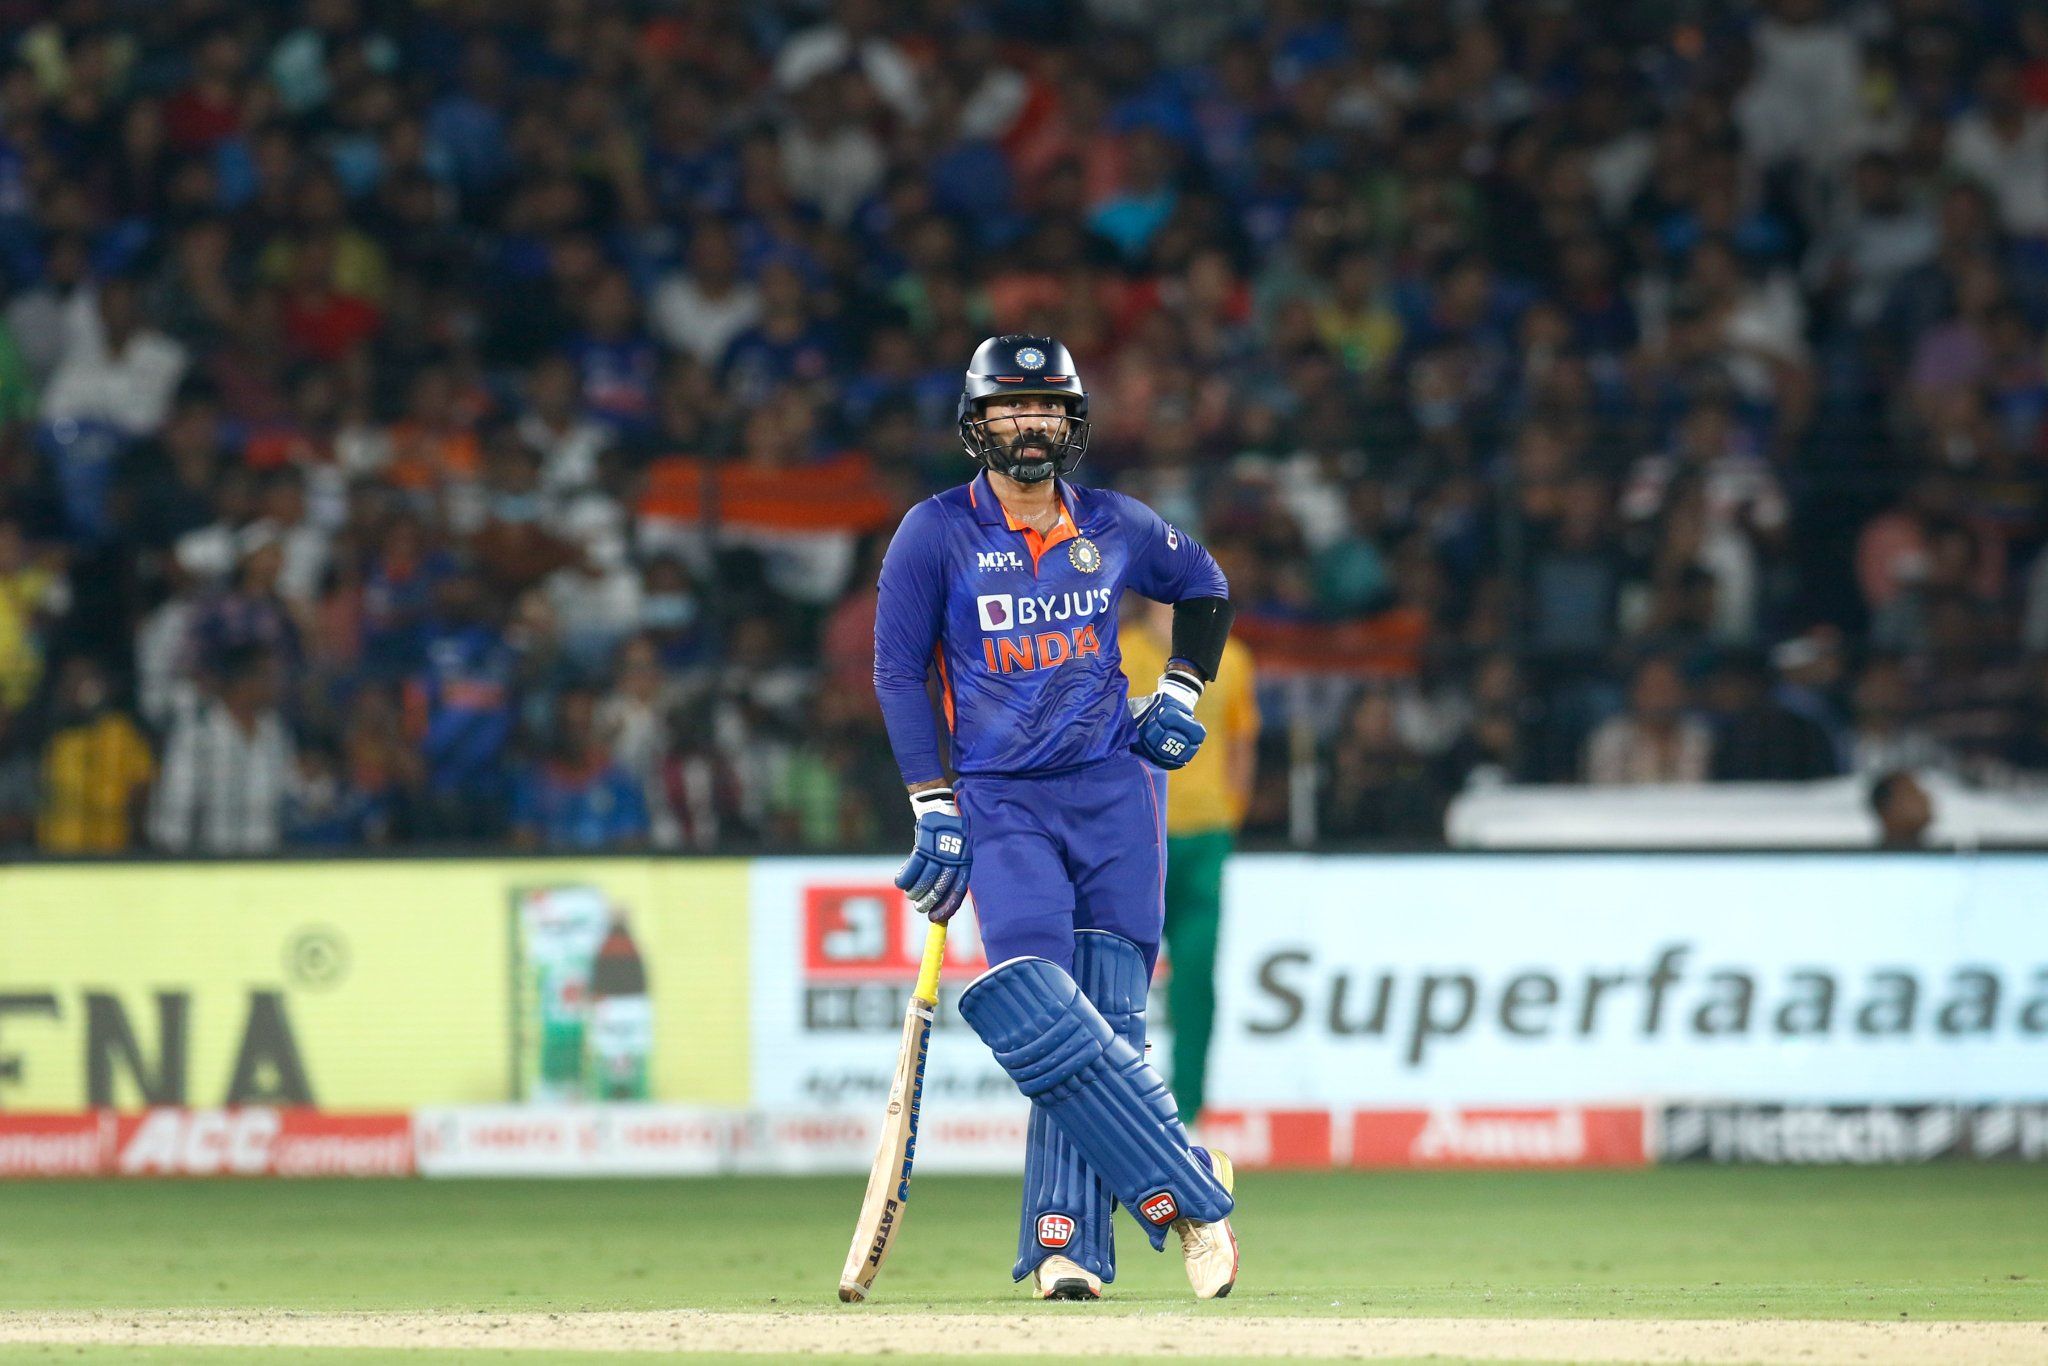 Axar Patel ahead of Dinesh Karthik? Team India receives flak